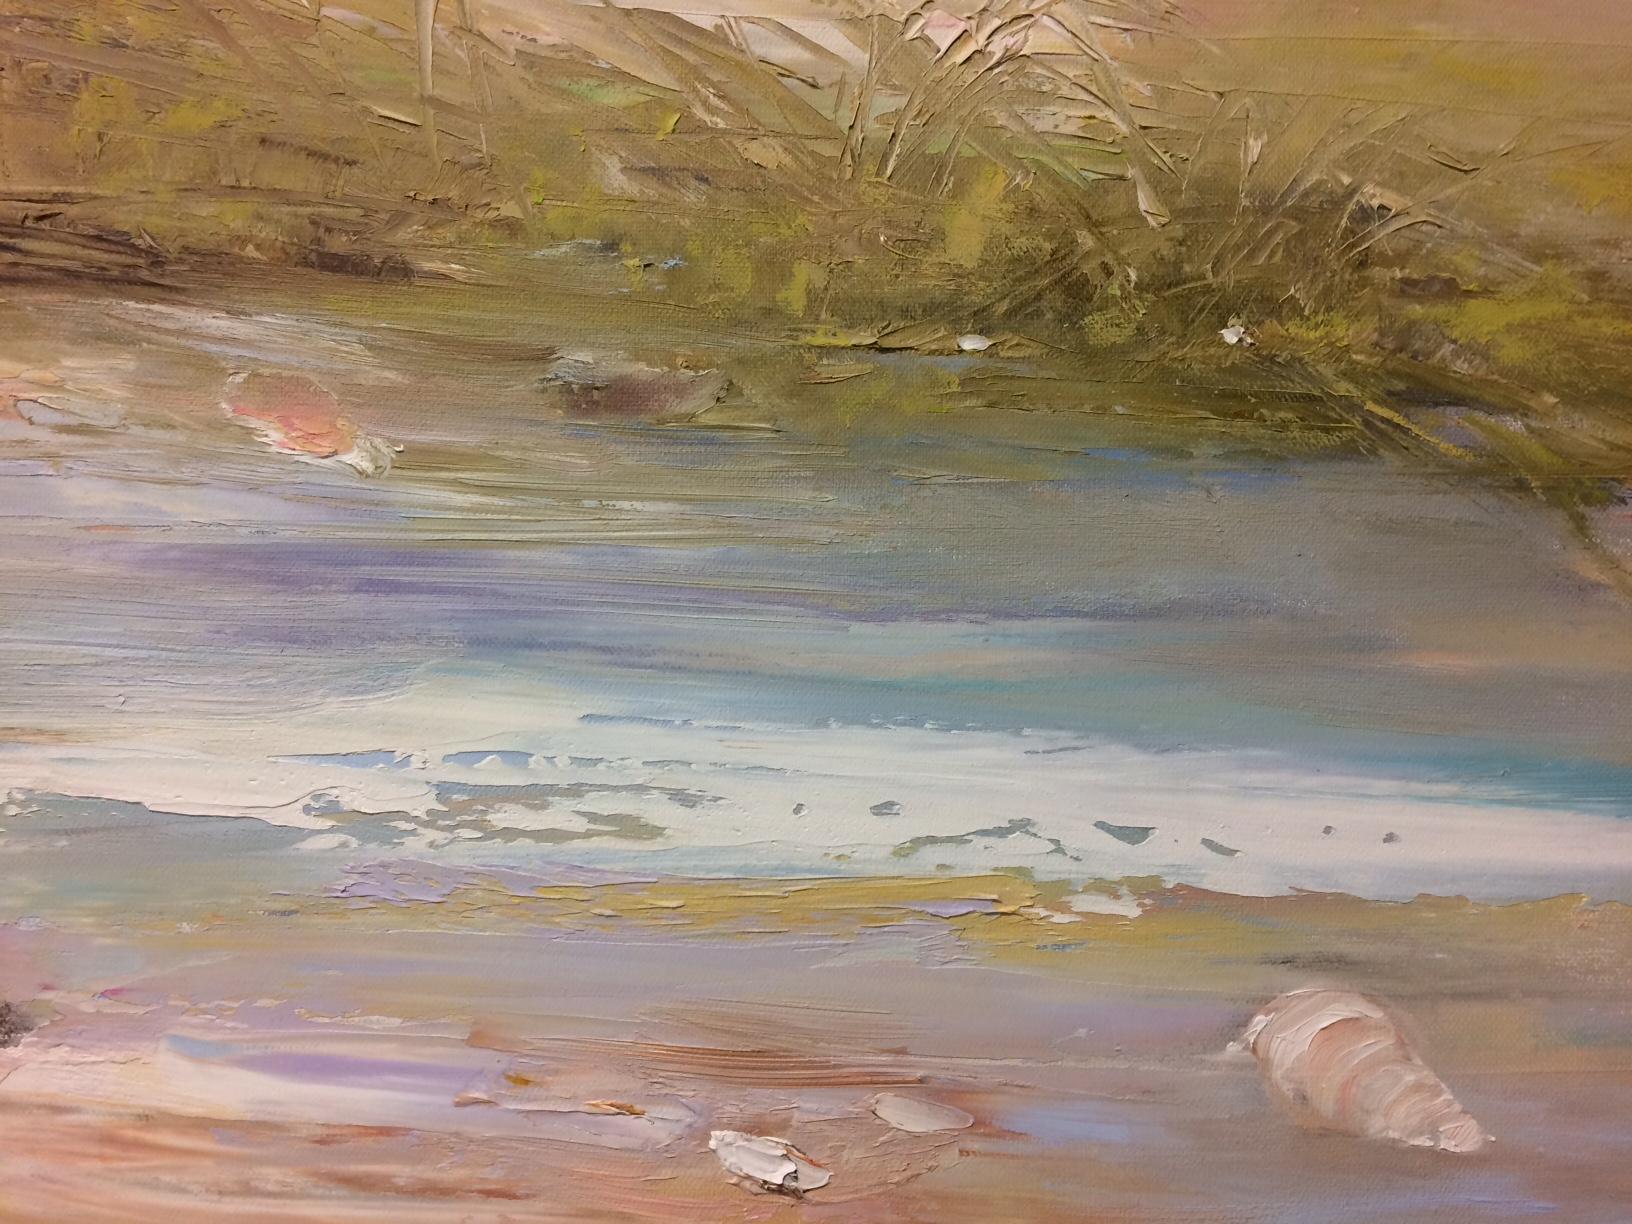 L'artiste du Connecticut Karen Ponelli a utilisé une gamme de teintes pastel pour créer ce paysage marin resplendissant de coquillages lavés par le soleil.  Cette peinture à l'huile originale est un abstrait impressionniste avec de lourds